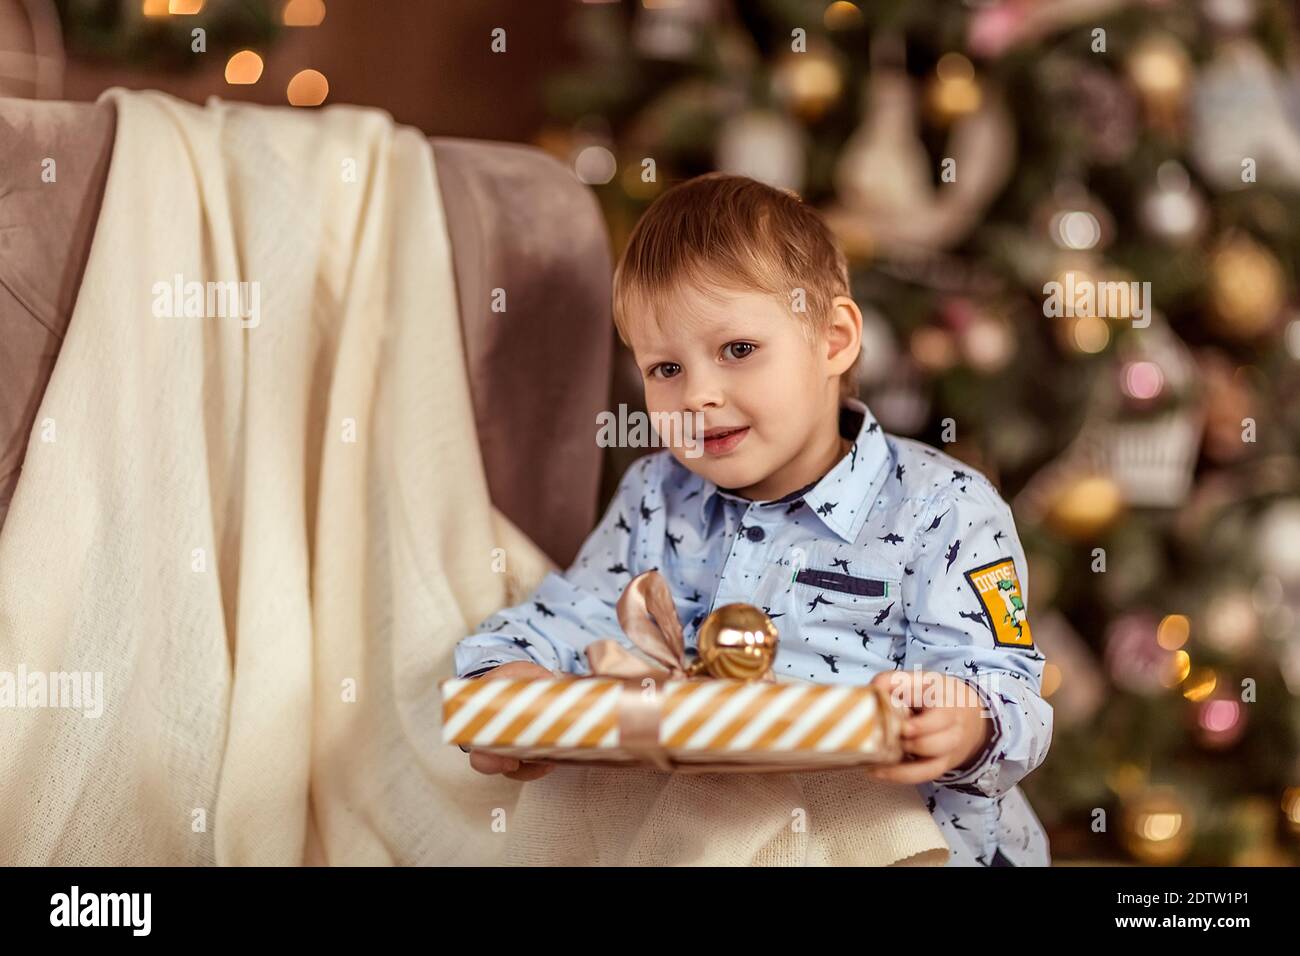 Un bel ragazzo di 4-5 anni si trova vicino al divano e tiene i regali nelle sue mani. Il concetto di vacanze invernali. Messa a fuoco morbida selettiva, bokeh (blurr Foto Stock